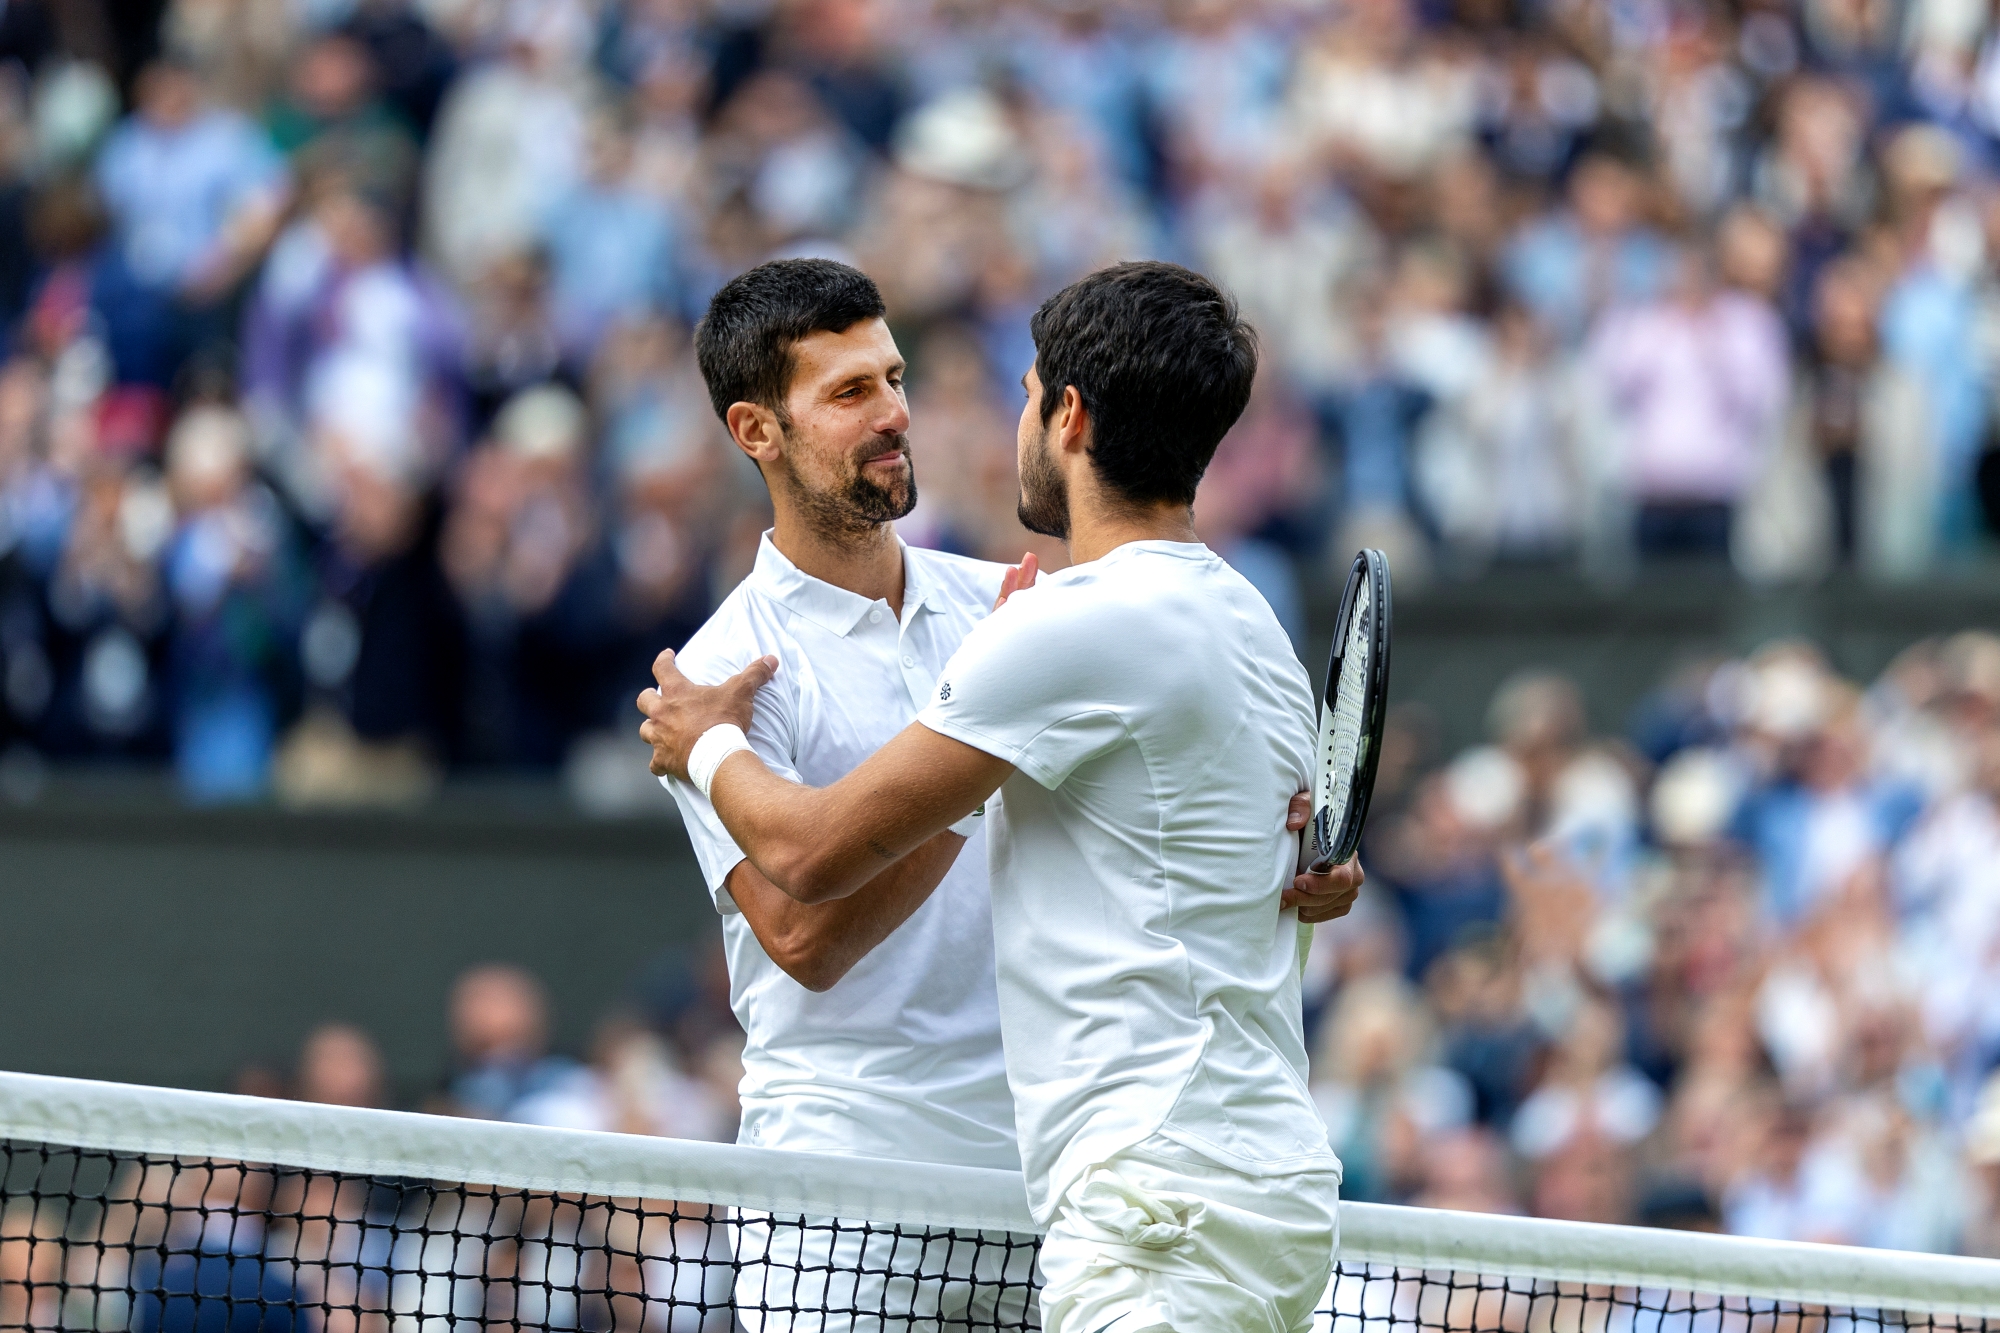 Az ötszettes, illetve közel ötórás wimbledoni döntő után Novak Djokovic elsőként gratulált Carlos Alcaraznak, aki korábban nem nyert Wimbledonban férfi egyes döntőt. (Fotó: Tim Clayton/Corbis/Getty Images)